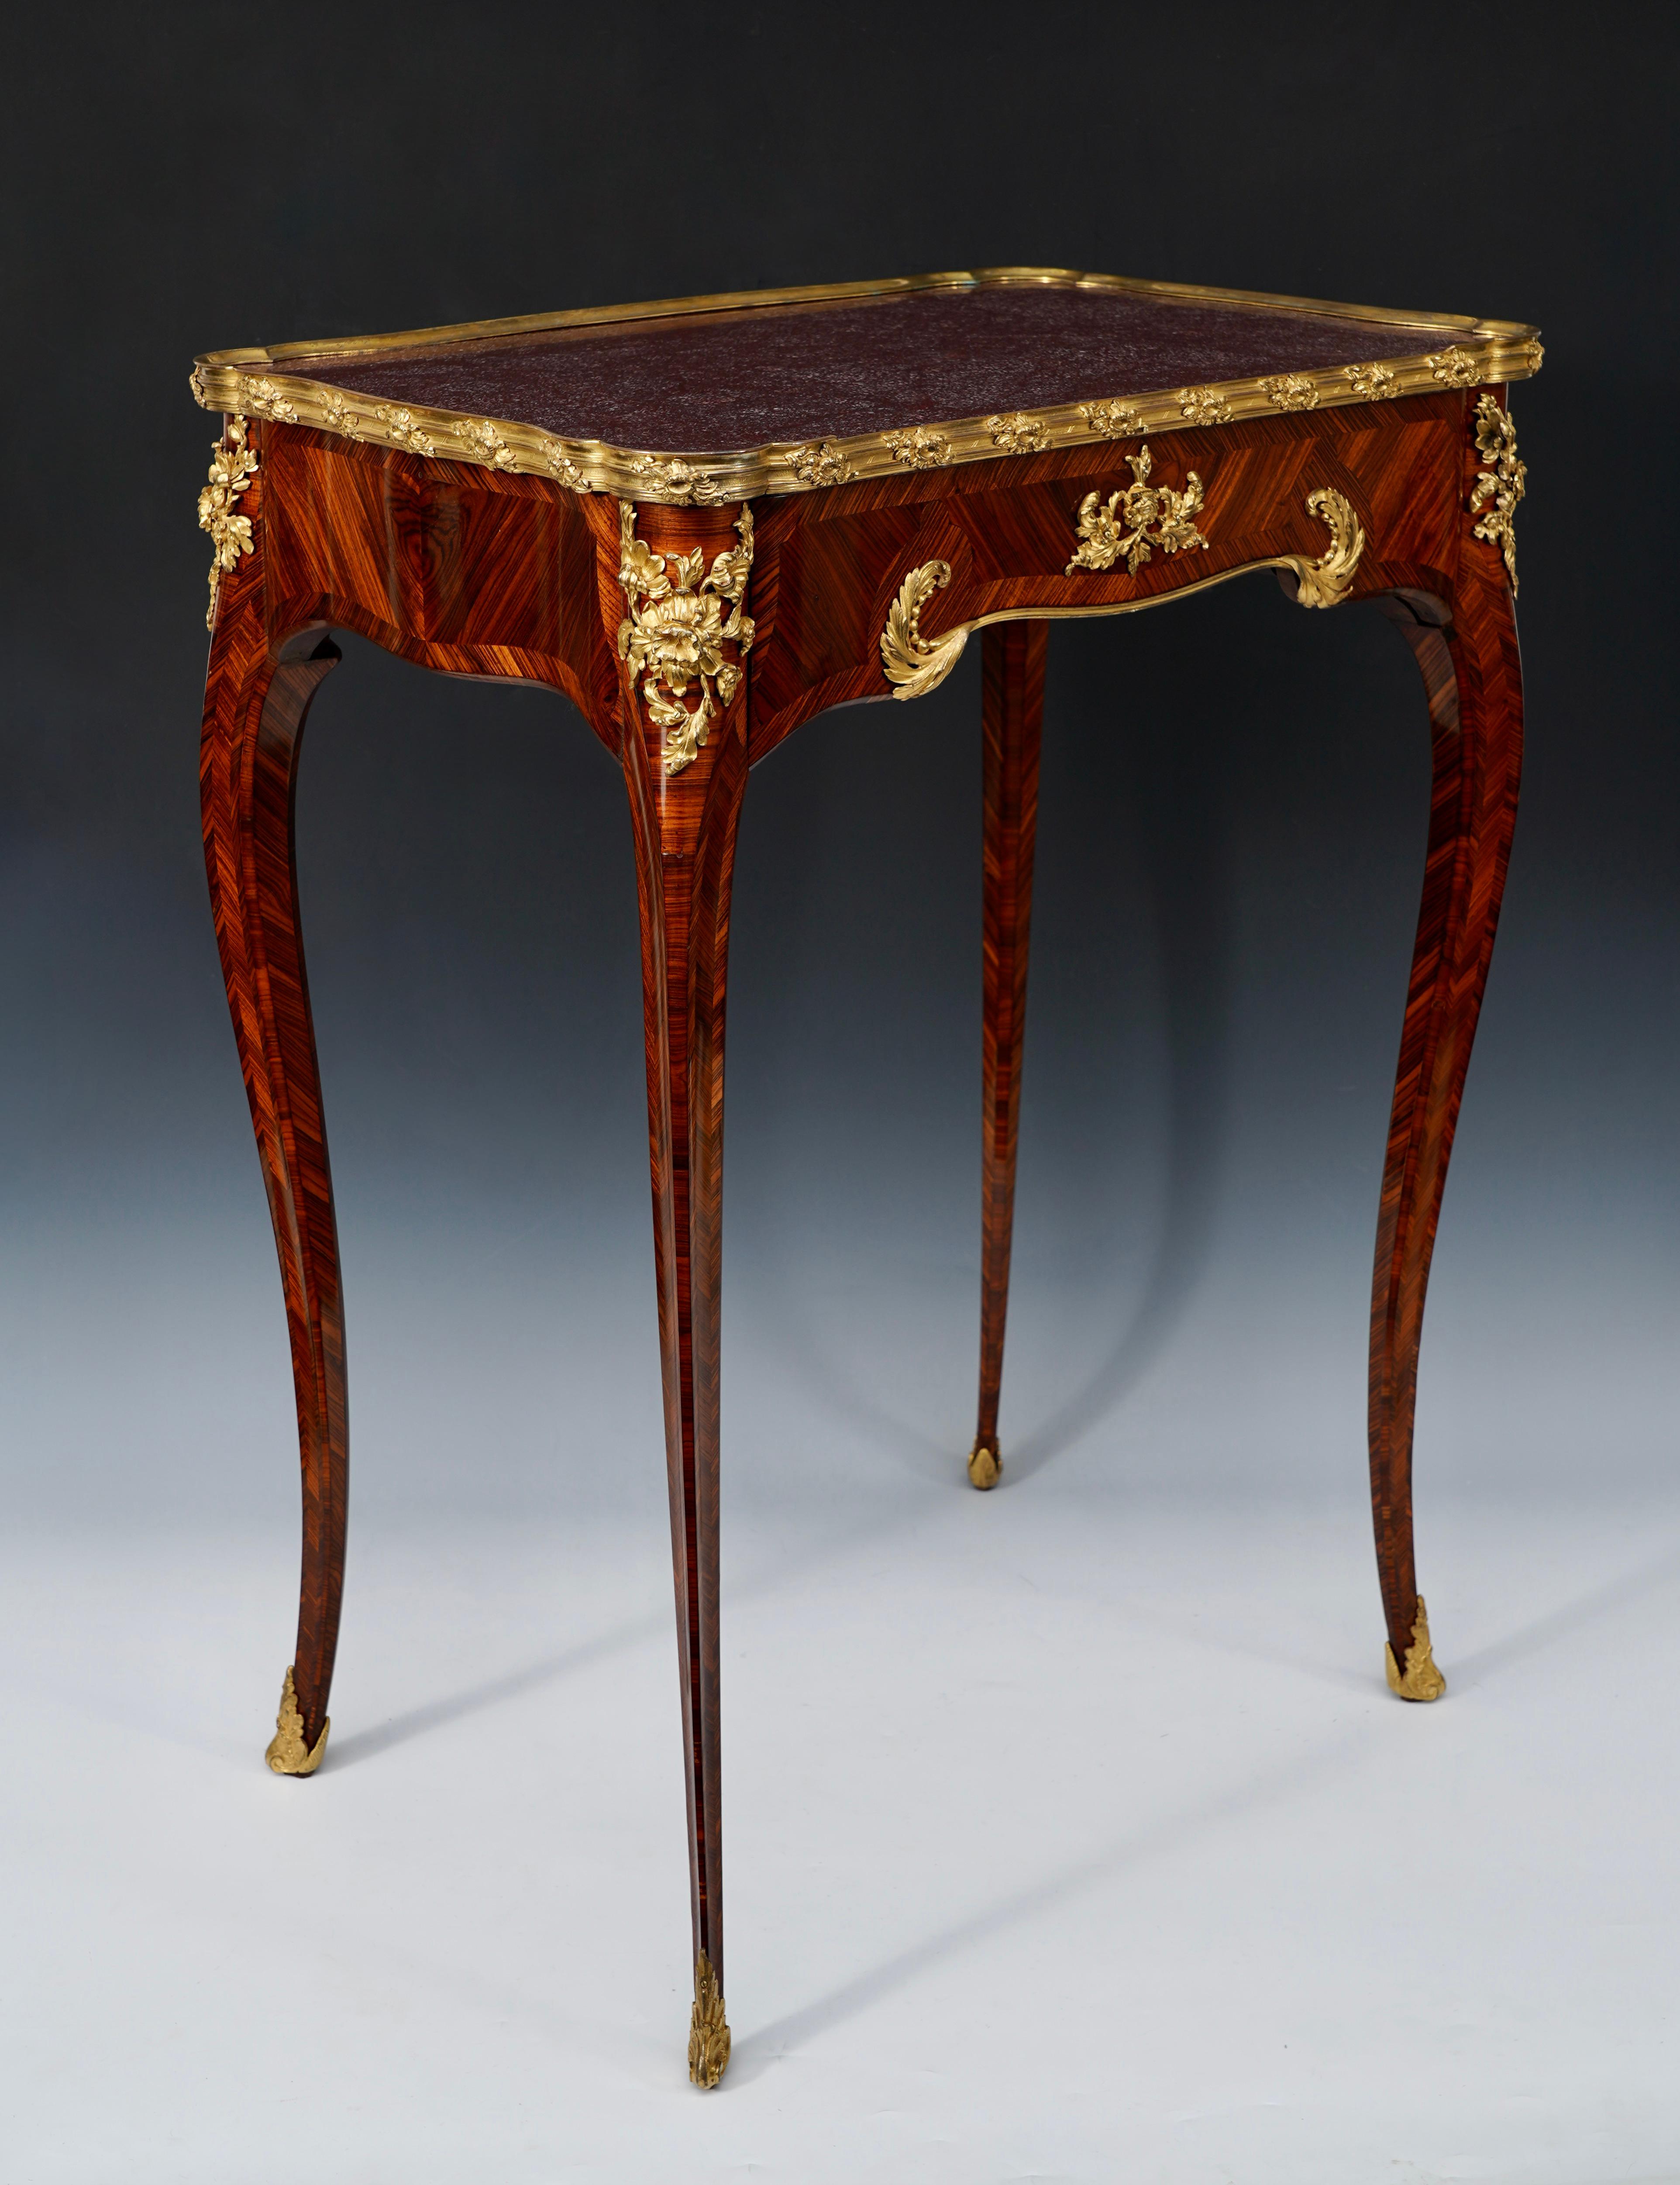 Estampillé H. Nelson

Charmante table à écrire d'inspiration Louis XV, de forme festonnée, en placage de bois de roi et ornée d'une fine monture en bronze doré et ciselé. Le plateau, entouré d'un moule en bronze doré, est recouvert d'un plateau en